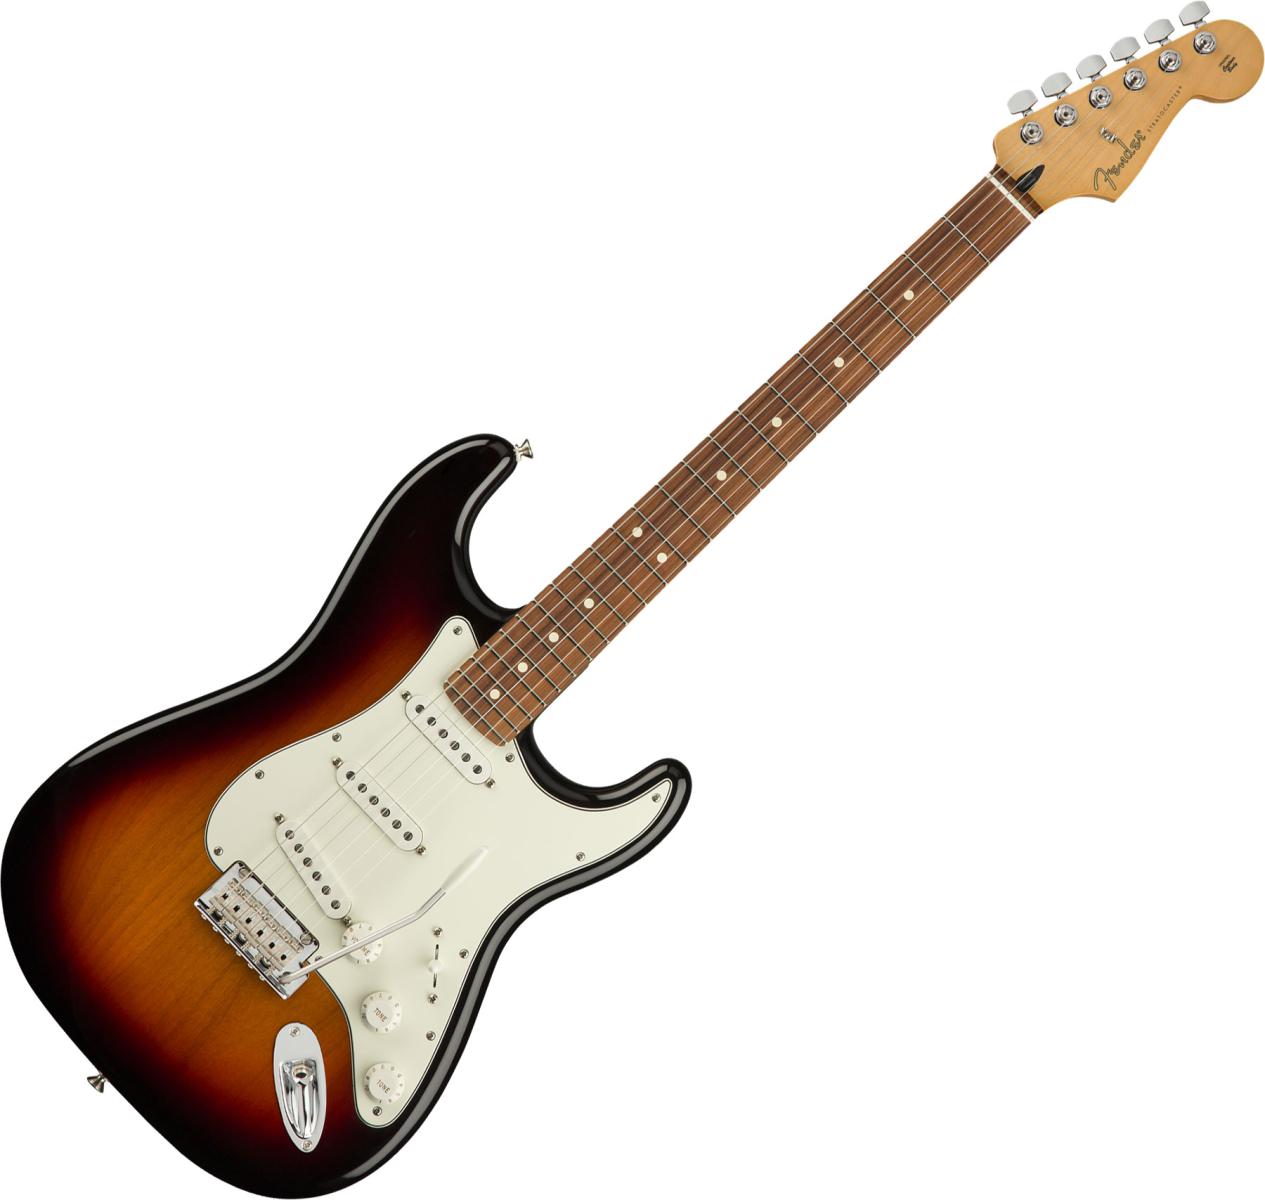 Fender - Hơn cả một thương hiệu Guitar (Kỳ 1)